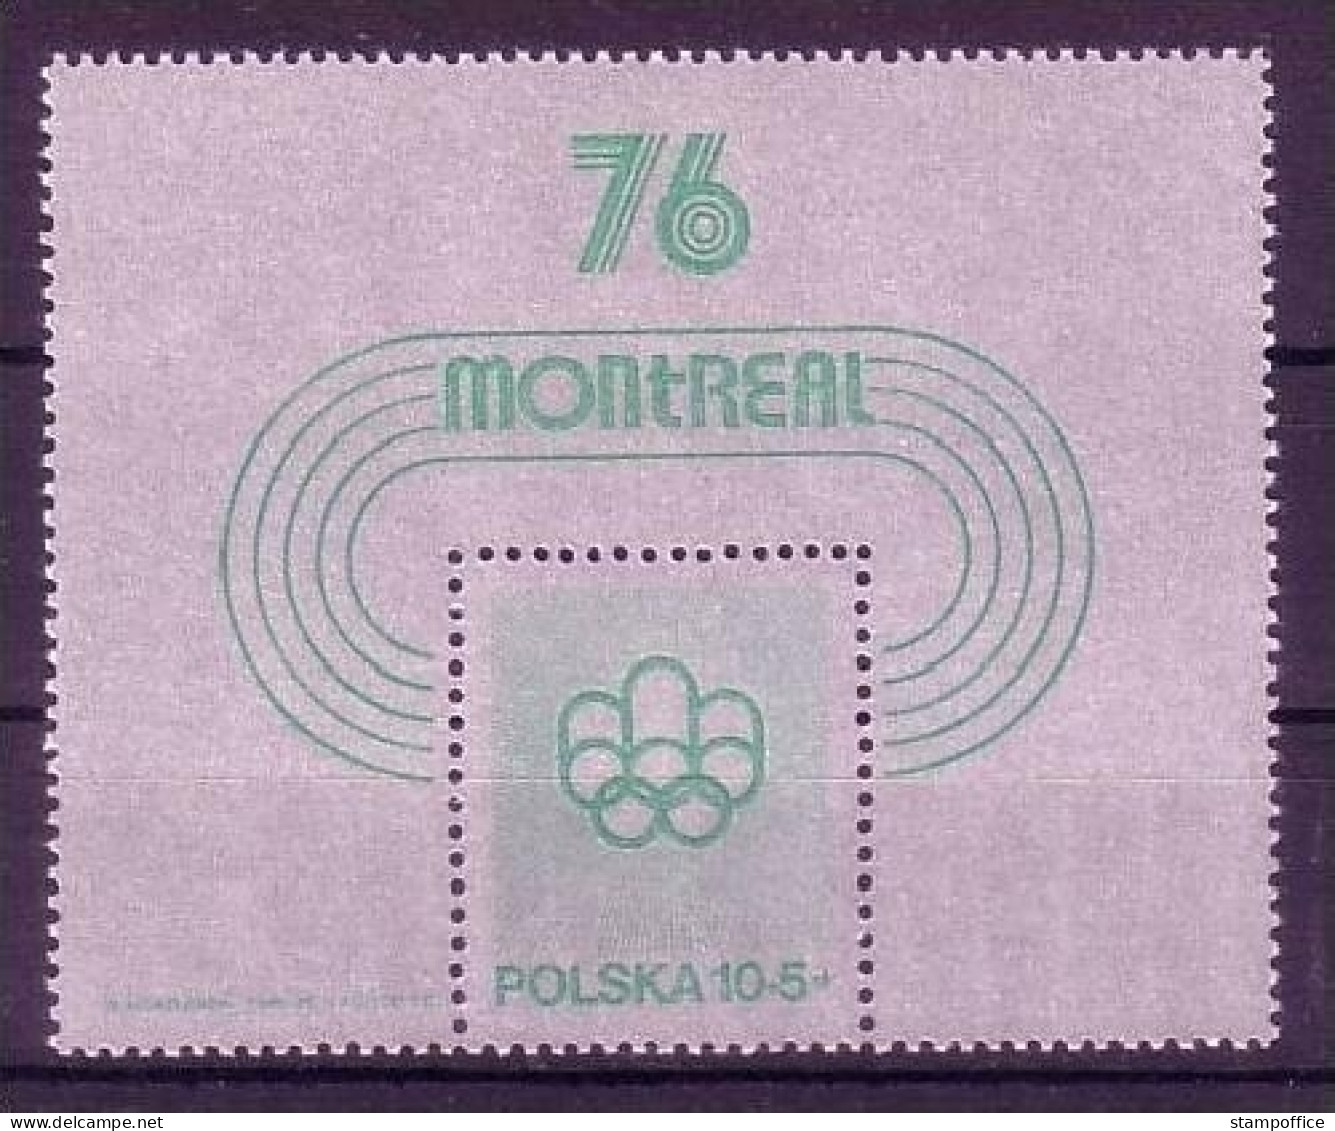 POLEN BLOCK 61 POSTFRISCH(MINT) OLYMPISCHE SOMMERSPIELE MONTREAL 1976 - Estate 1976: Montreal